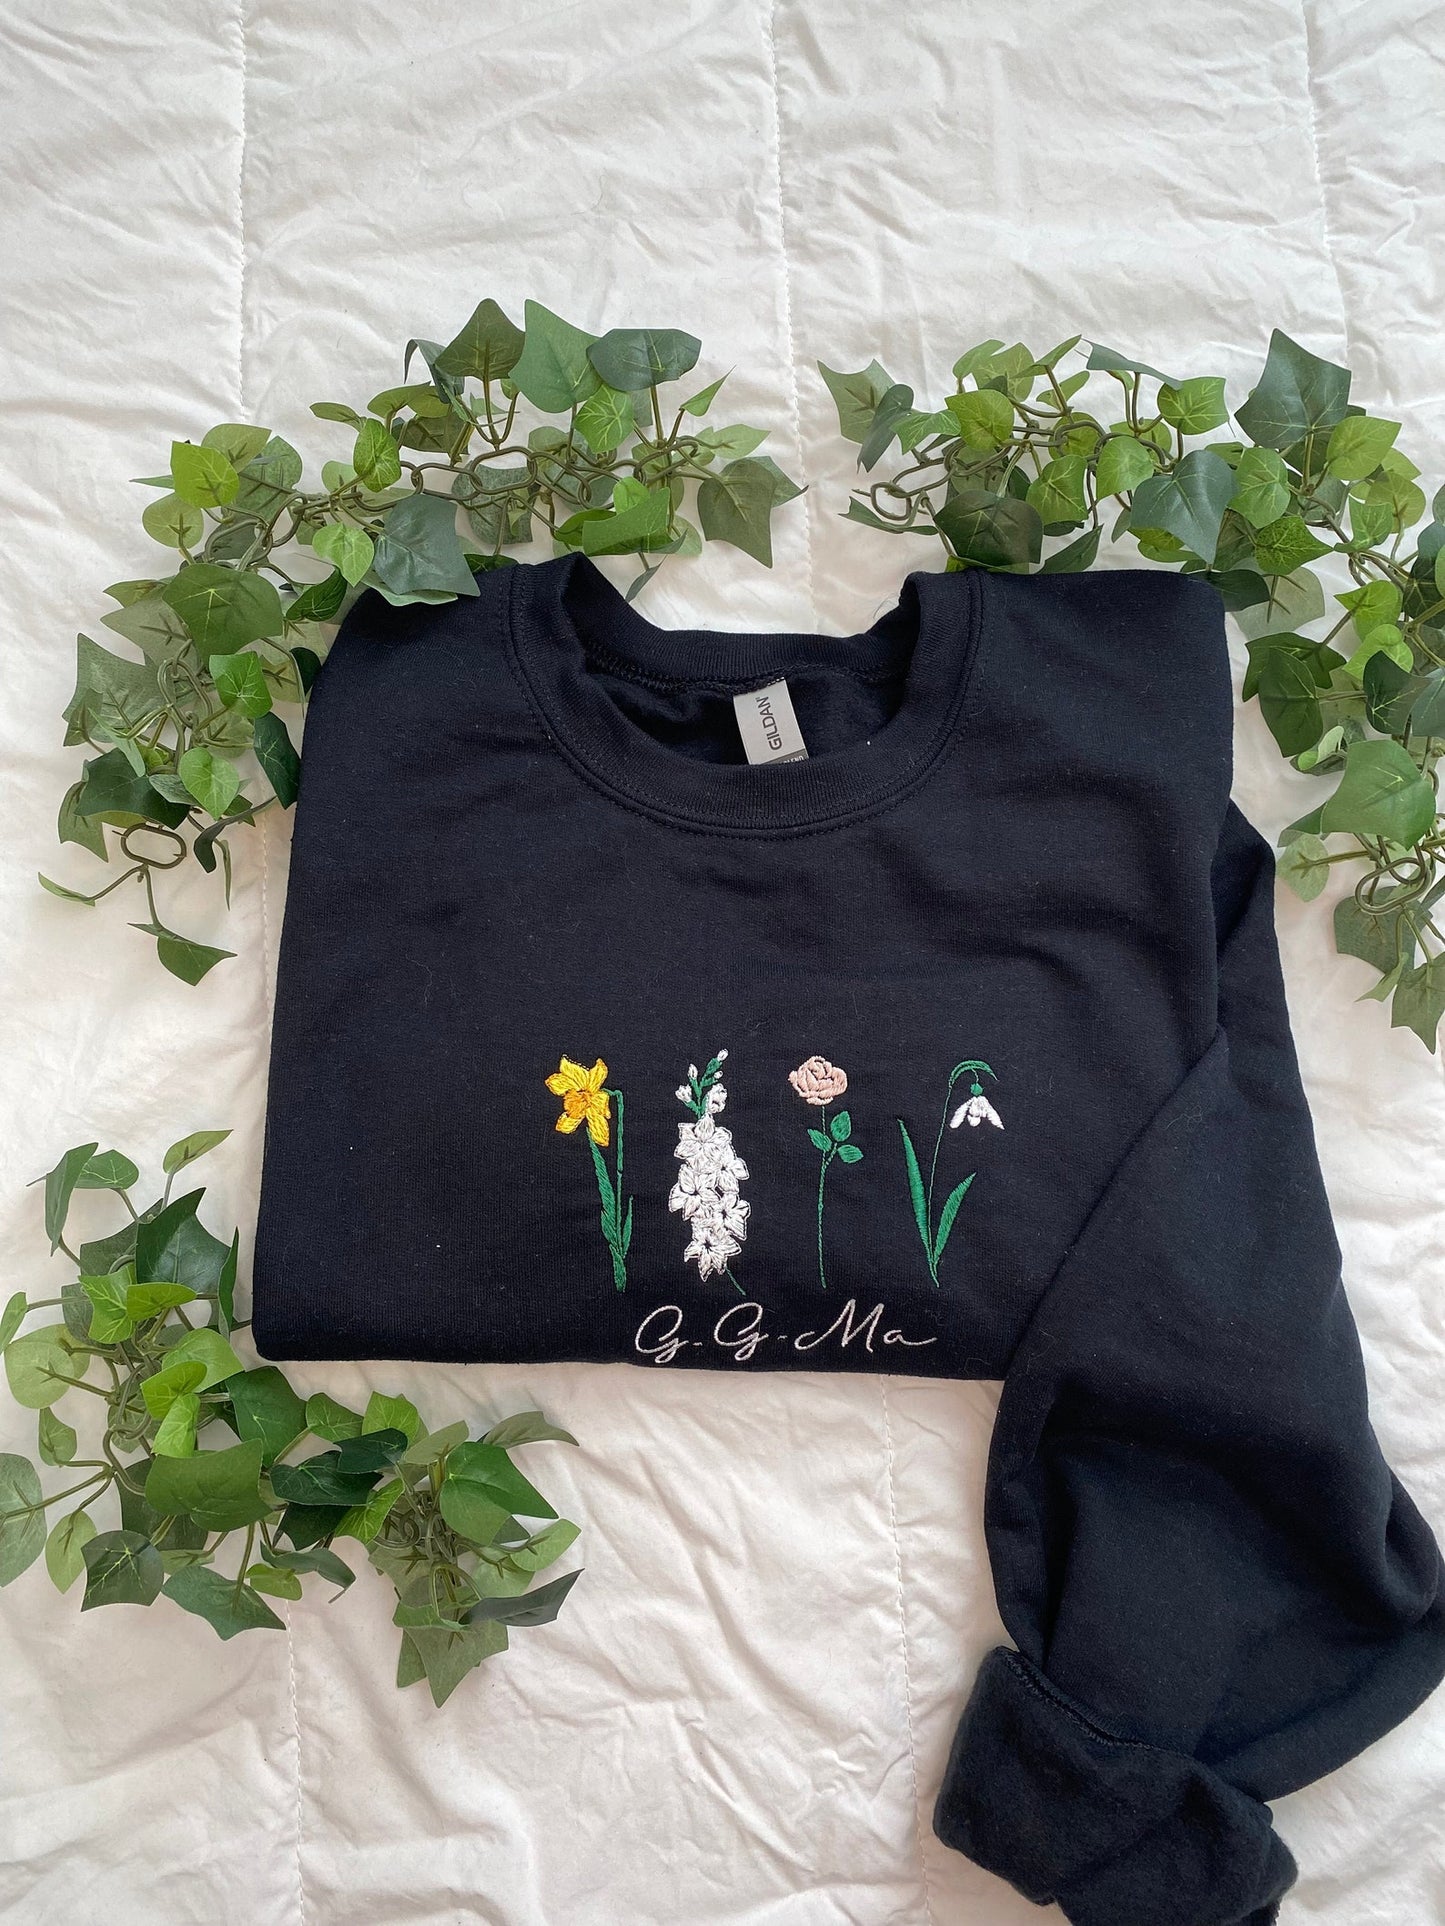 Birth month flower embroidered sweatshirt/Hoodie